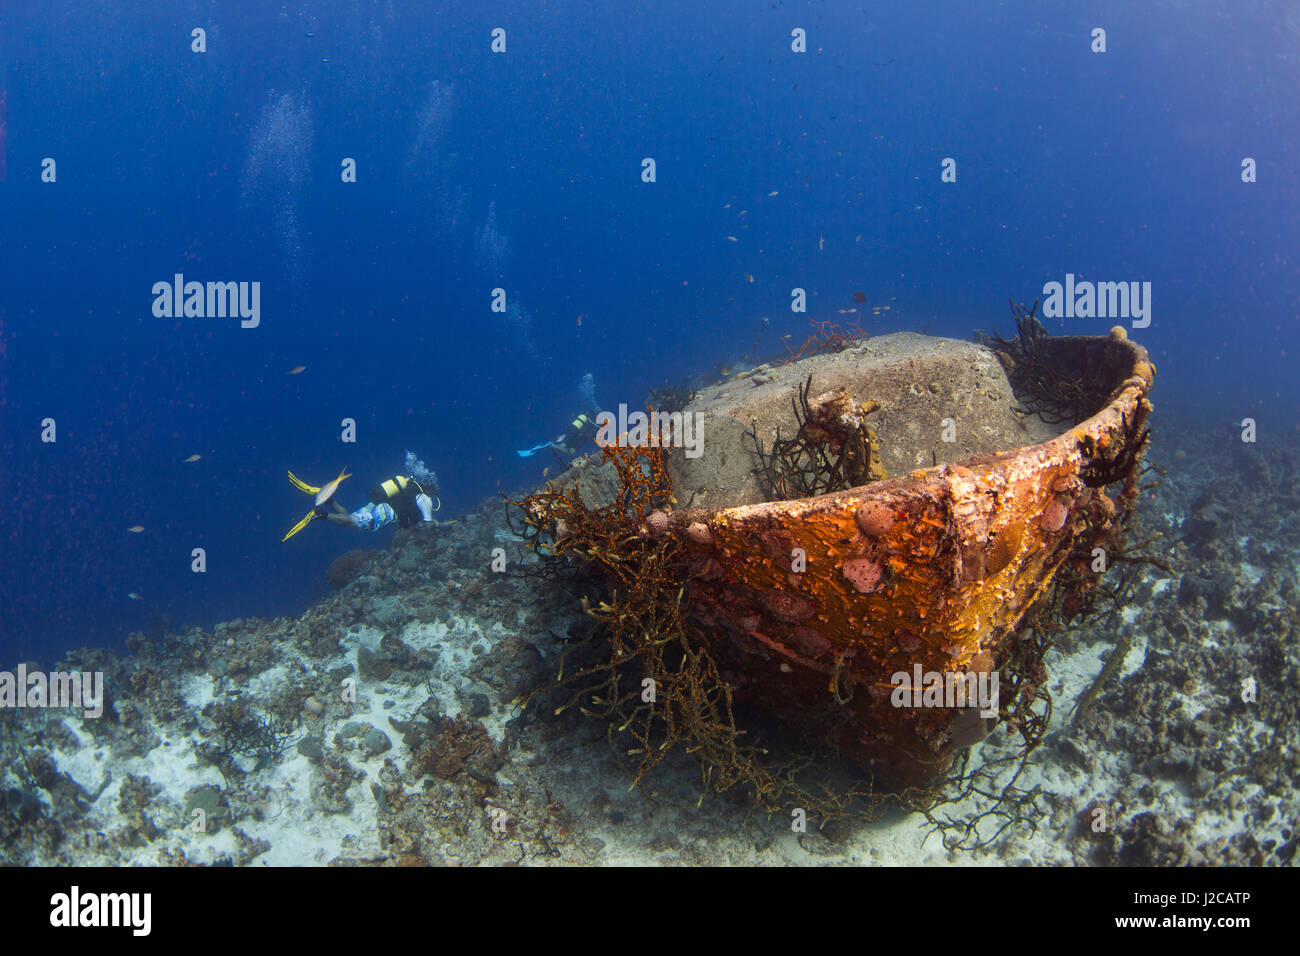 Dos buzos nadan por encima de un naufragio que descansa a lo largo de la cornisa de un arrecife de coral durante una inmersión en la Bahía de Cochinos, cerca de la ciudad de Playa Girón, Cuba Foto de stock